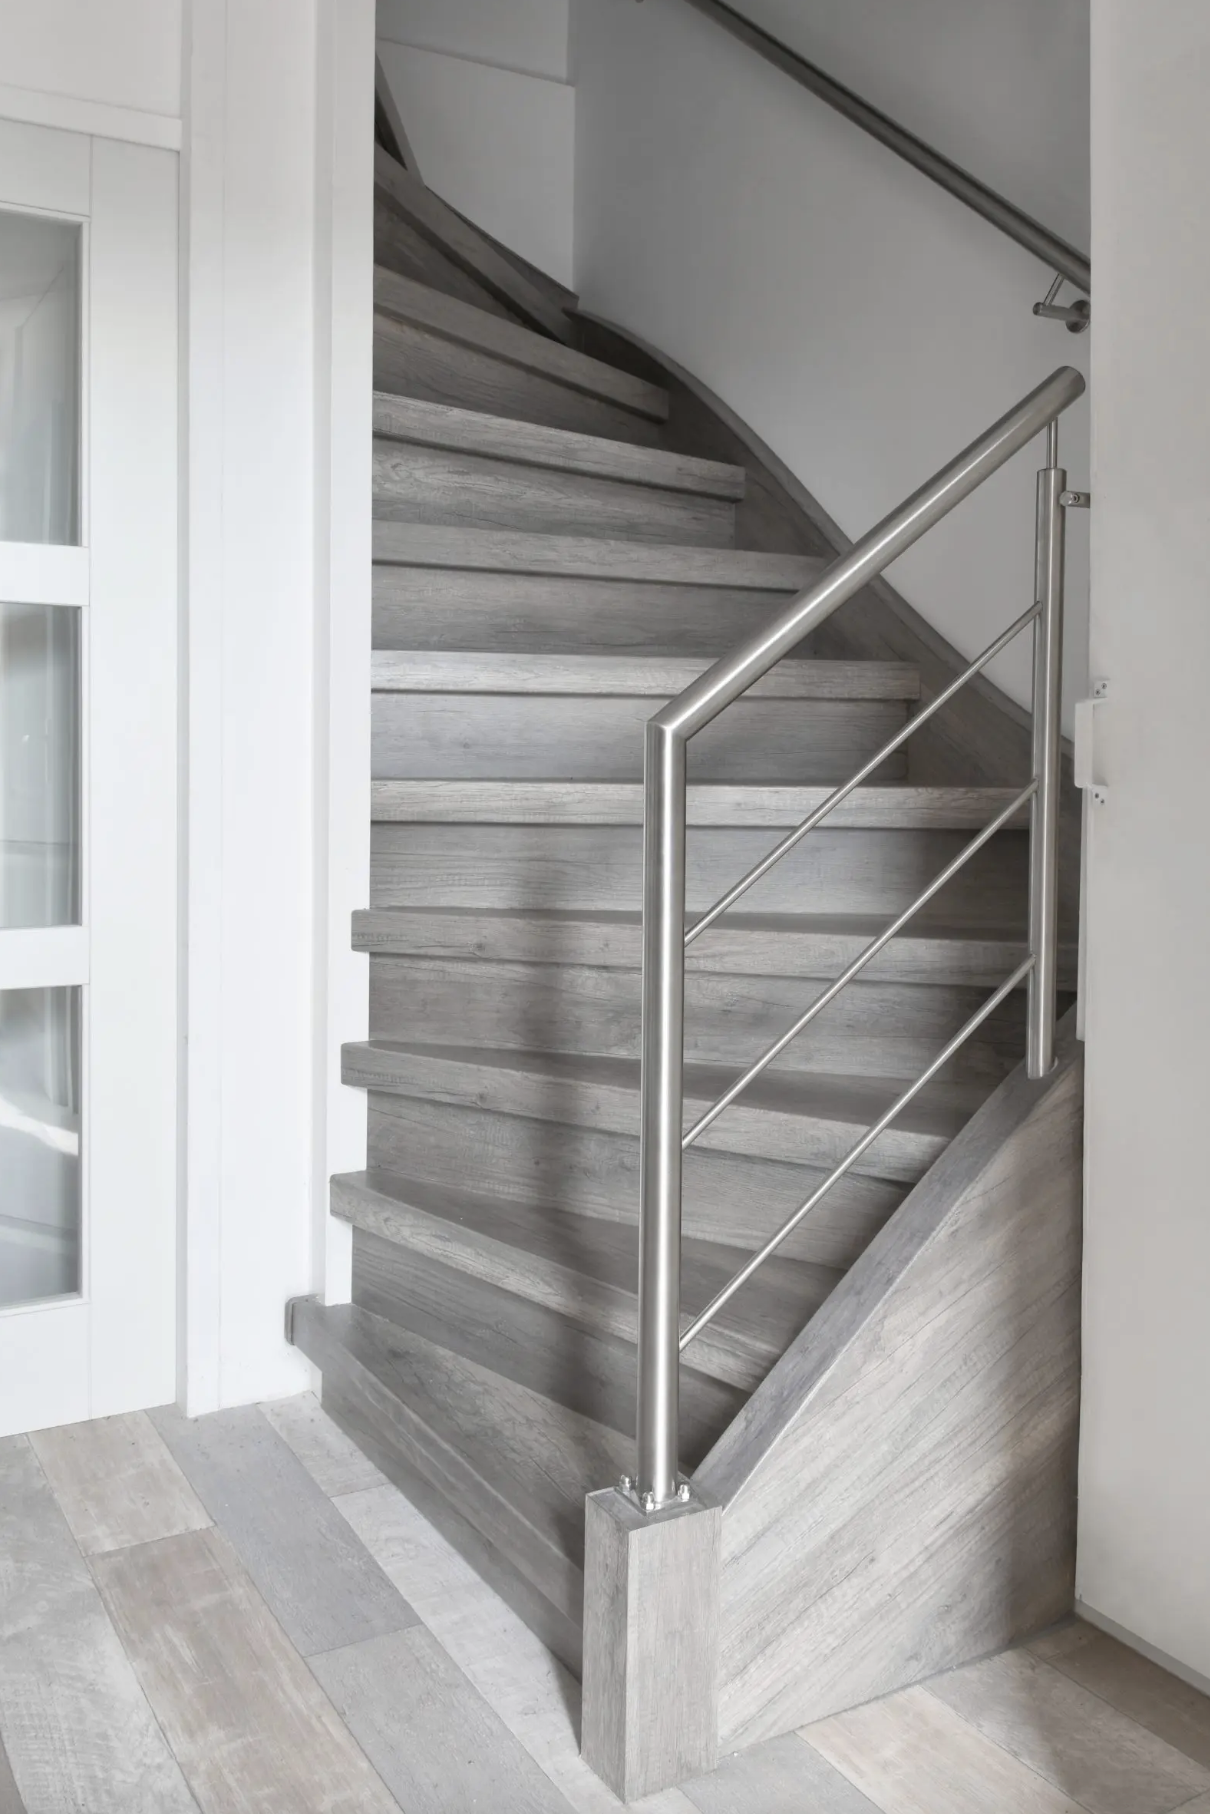 Een stijlvolle trap? Een snelle traprenovatie voor een moderne verbinding tussen twee verdiepingen.